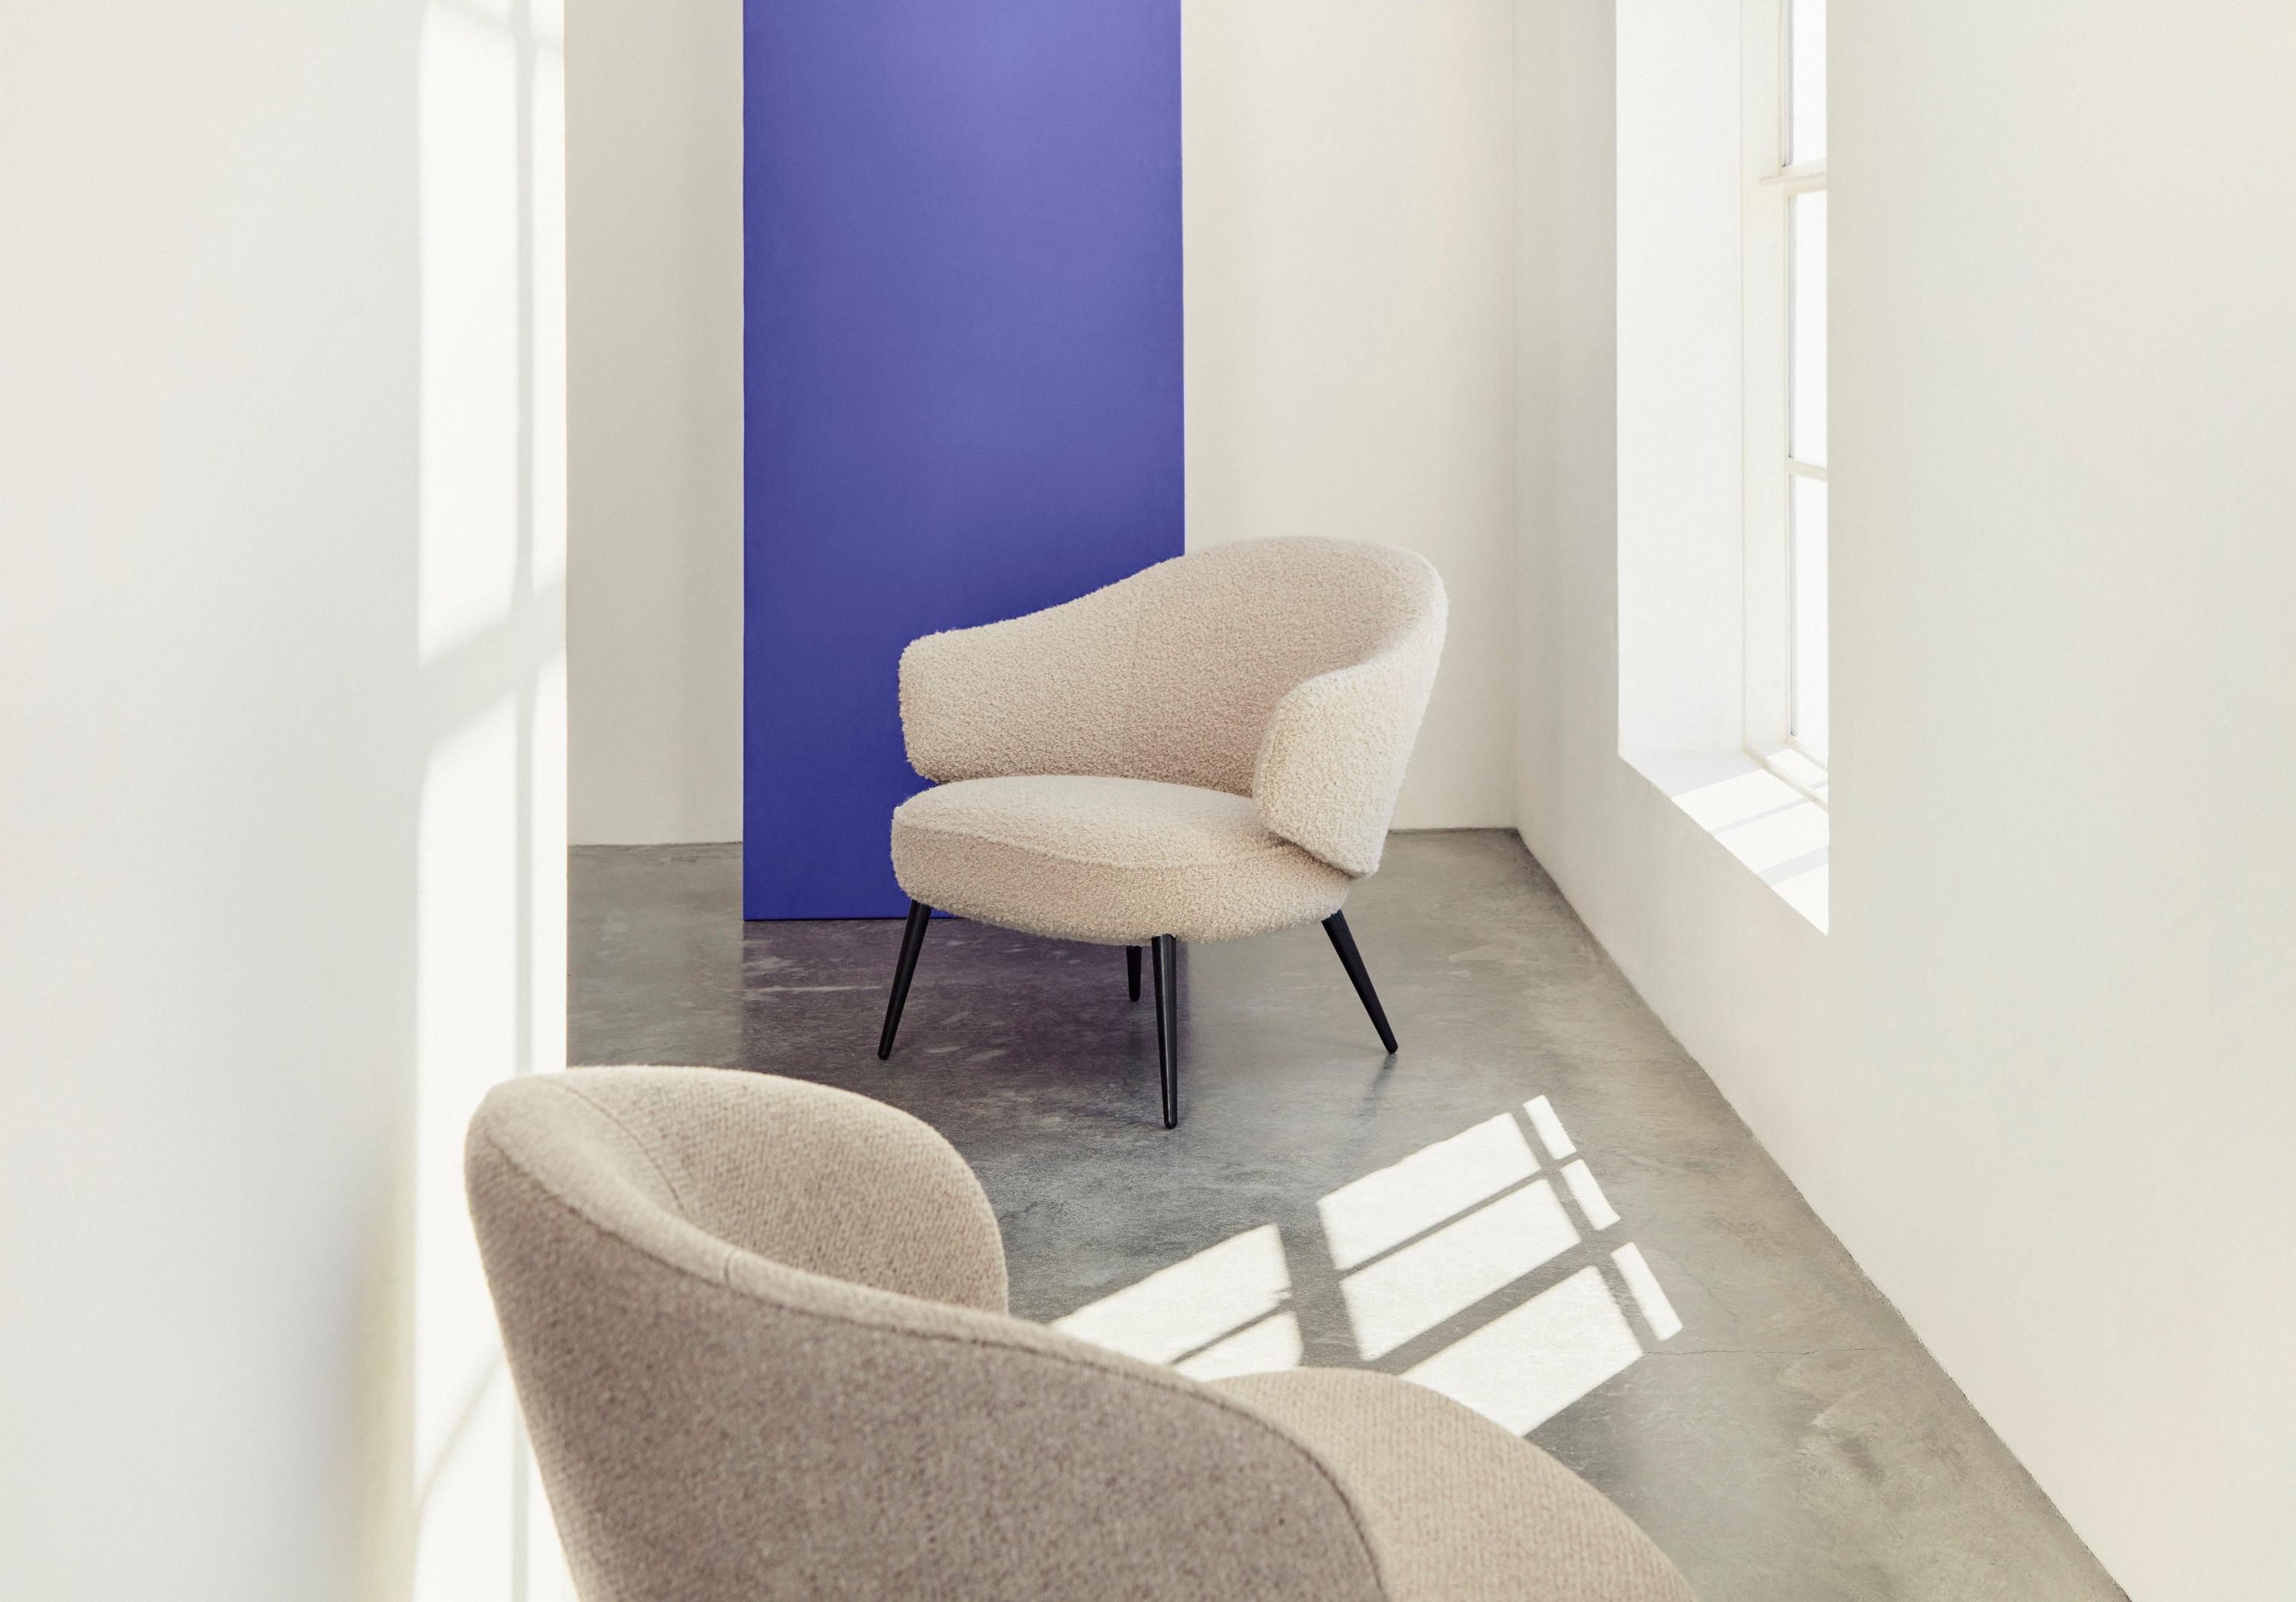 Charlotte アームチェア | デンマークデザインの家具 | ボーコンセプト